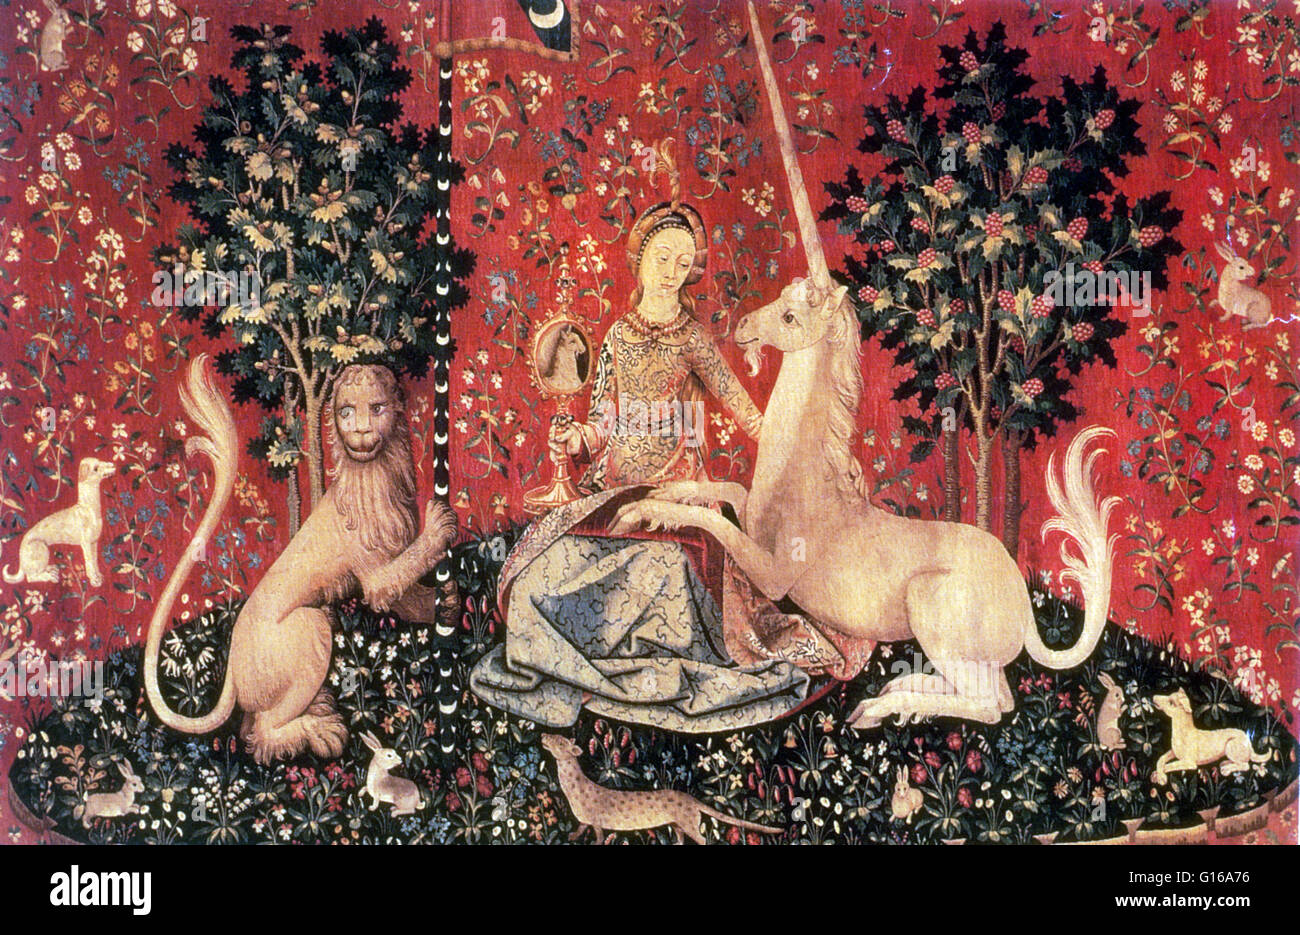 La dame et la licorne est le titre donné à une série de six tapisseries tissées dans les Flandres de laine et soie, à partir de dessins tirés à Paris à la fin du xve siècle et sont considérés comme l'une des plus grandes œuvres d'art du Moyen Âge en Europe Banque D'Images